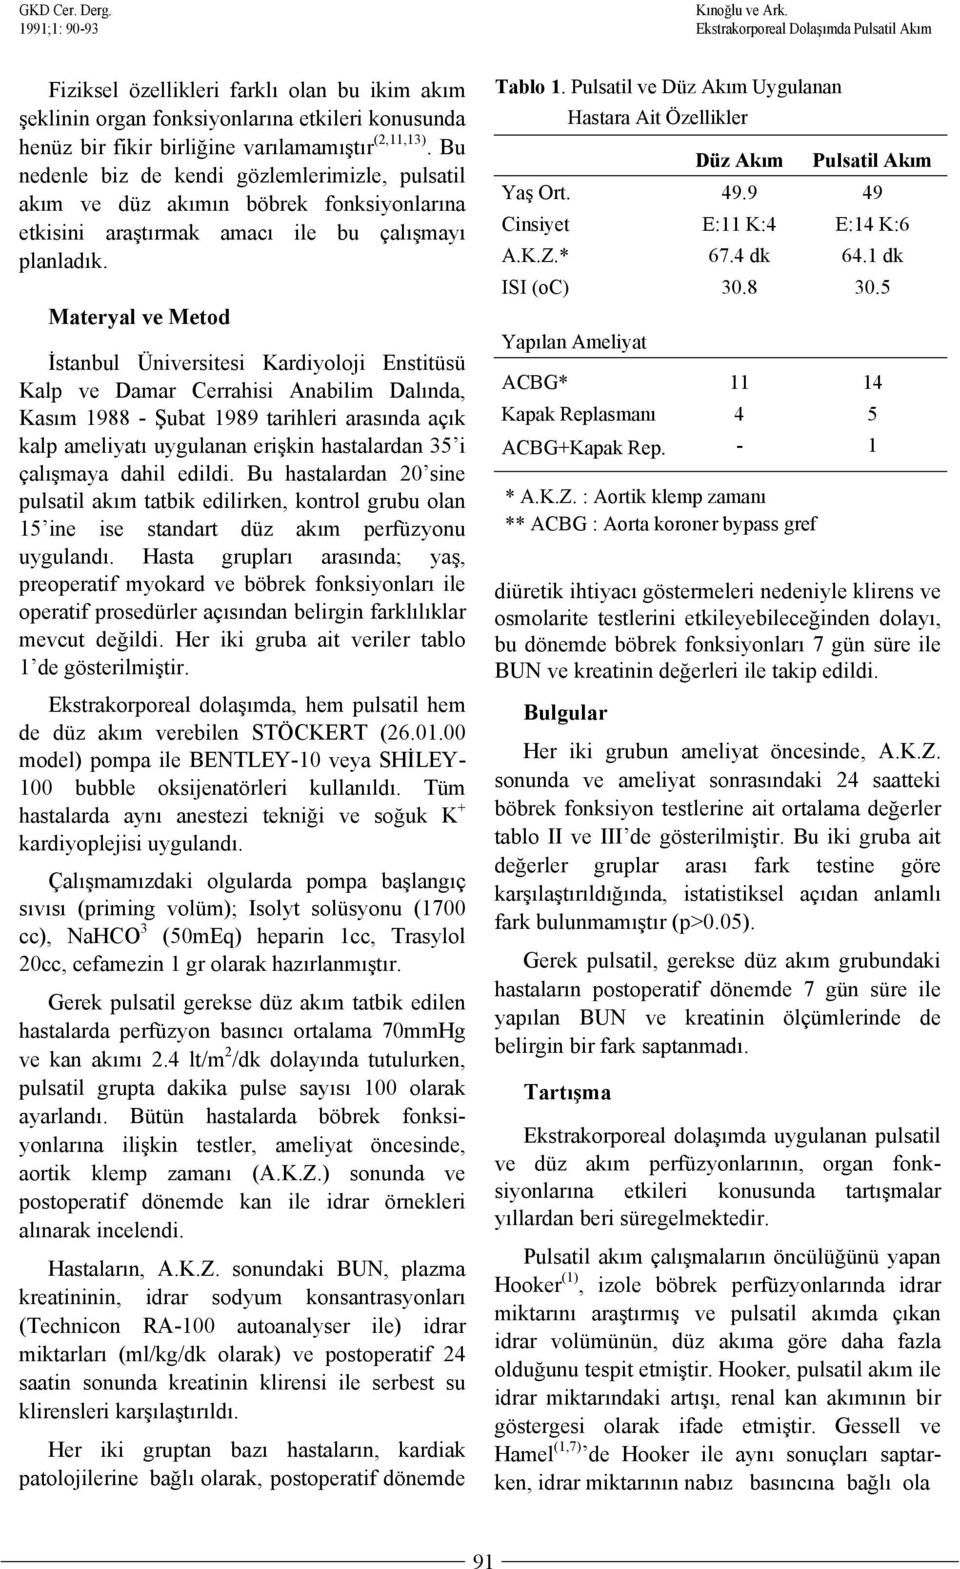 Materyal ve Metod İstanbul Üniversitesi Kardiyoloji Enstitüsü Kalp ve Damar Cerrahisi Anabilim Dalında, Kasım 1988 - Şubat 1989 tarihleri arasında açık kalp ameliyatı uygulanan erişkin hastalardan 35